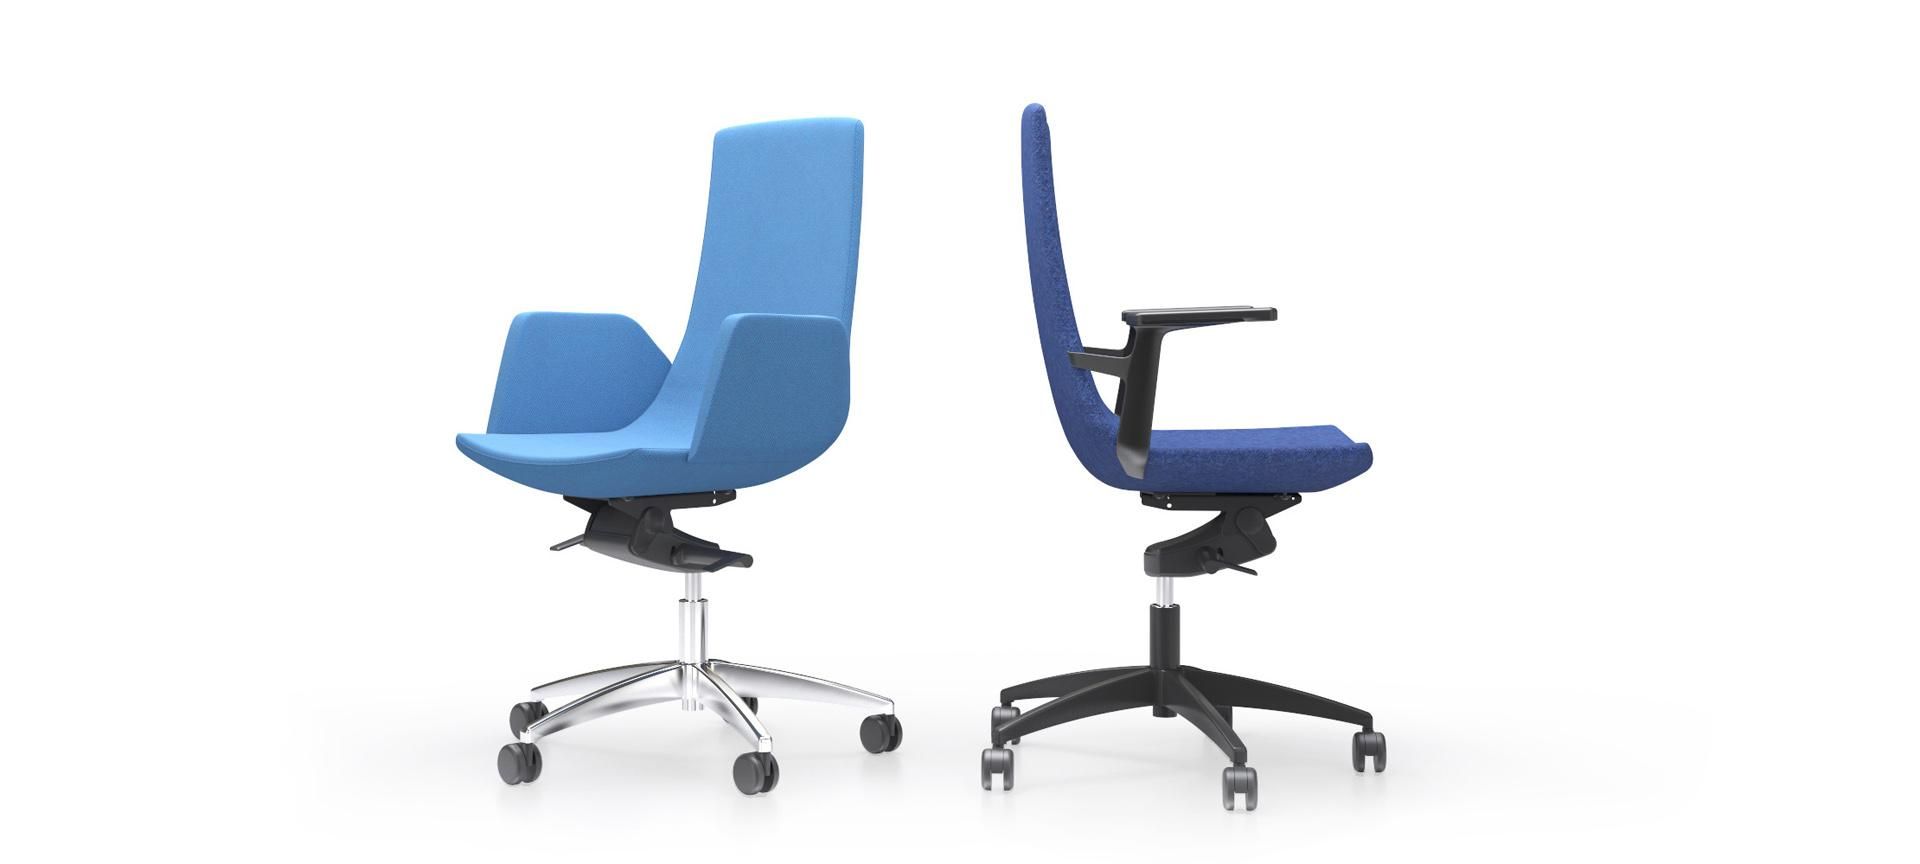 North cape - chaise de bureau - nartubas furniture uab - accoudoirs rectangulaires_0